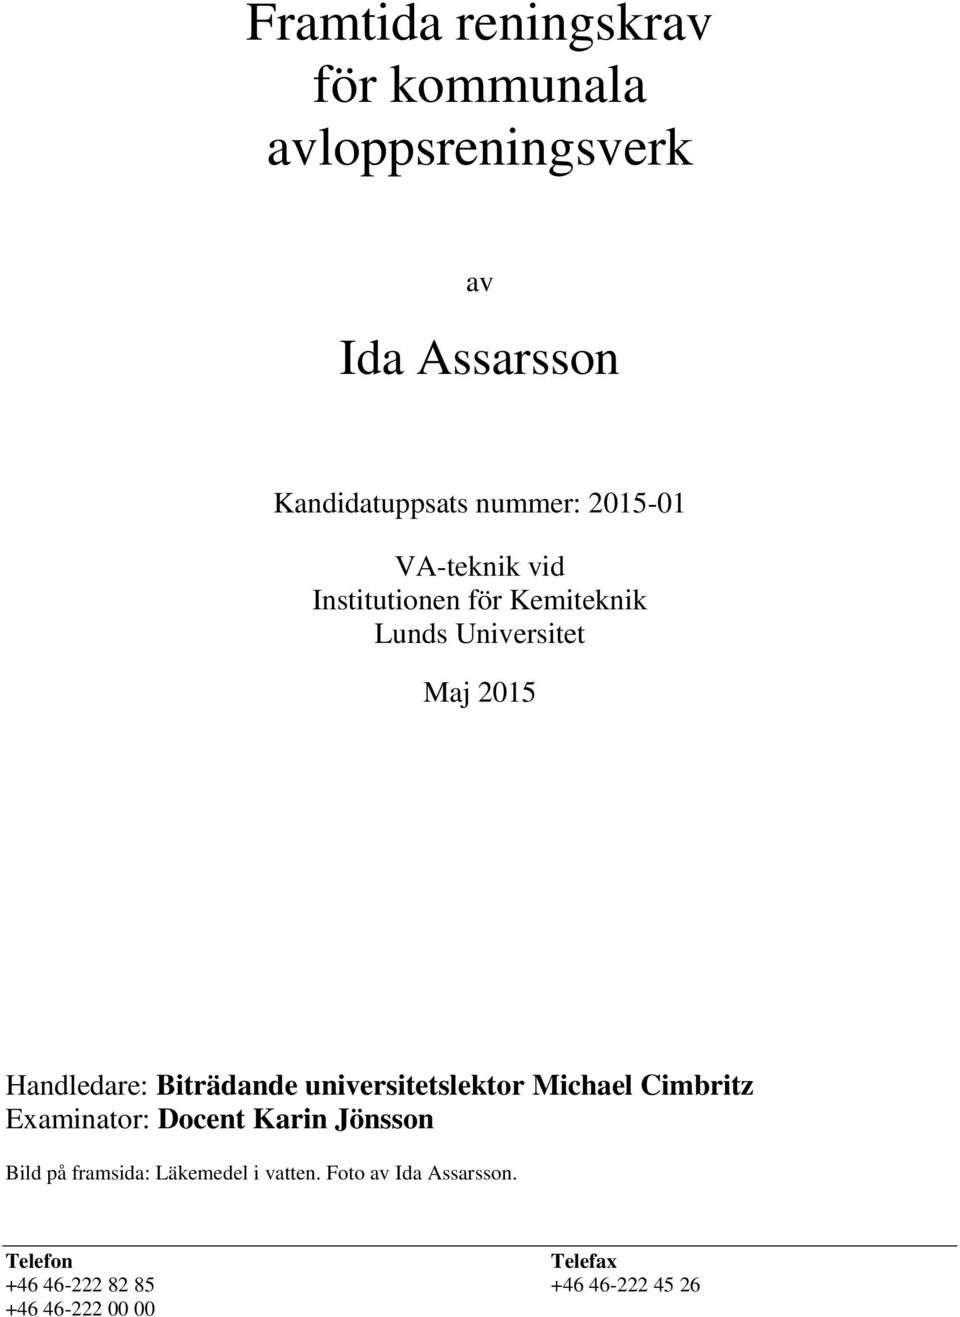 Biträdande universitetslektor Michael Cimbritz Examinator: Docent Karin Jönsson Bild på framsida: